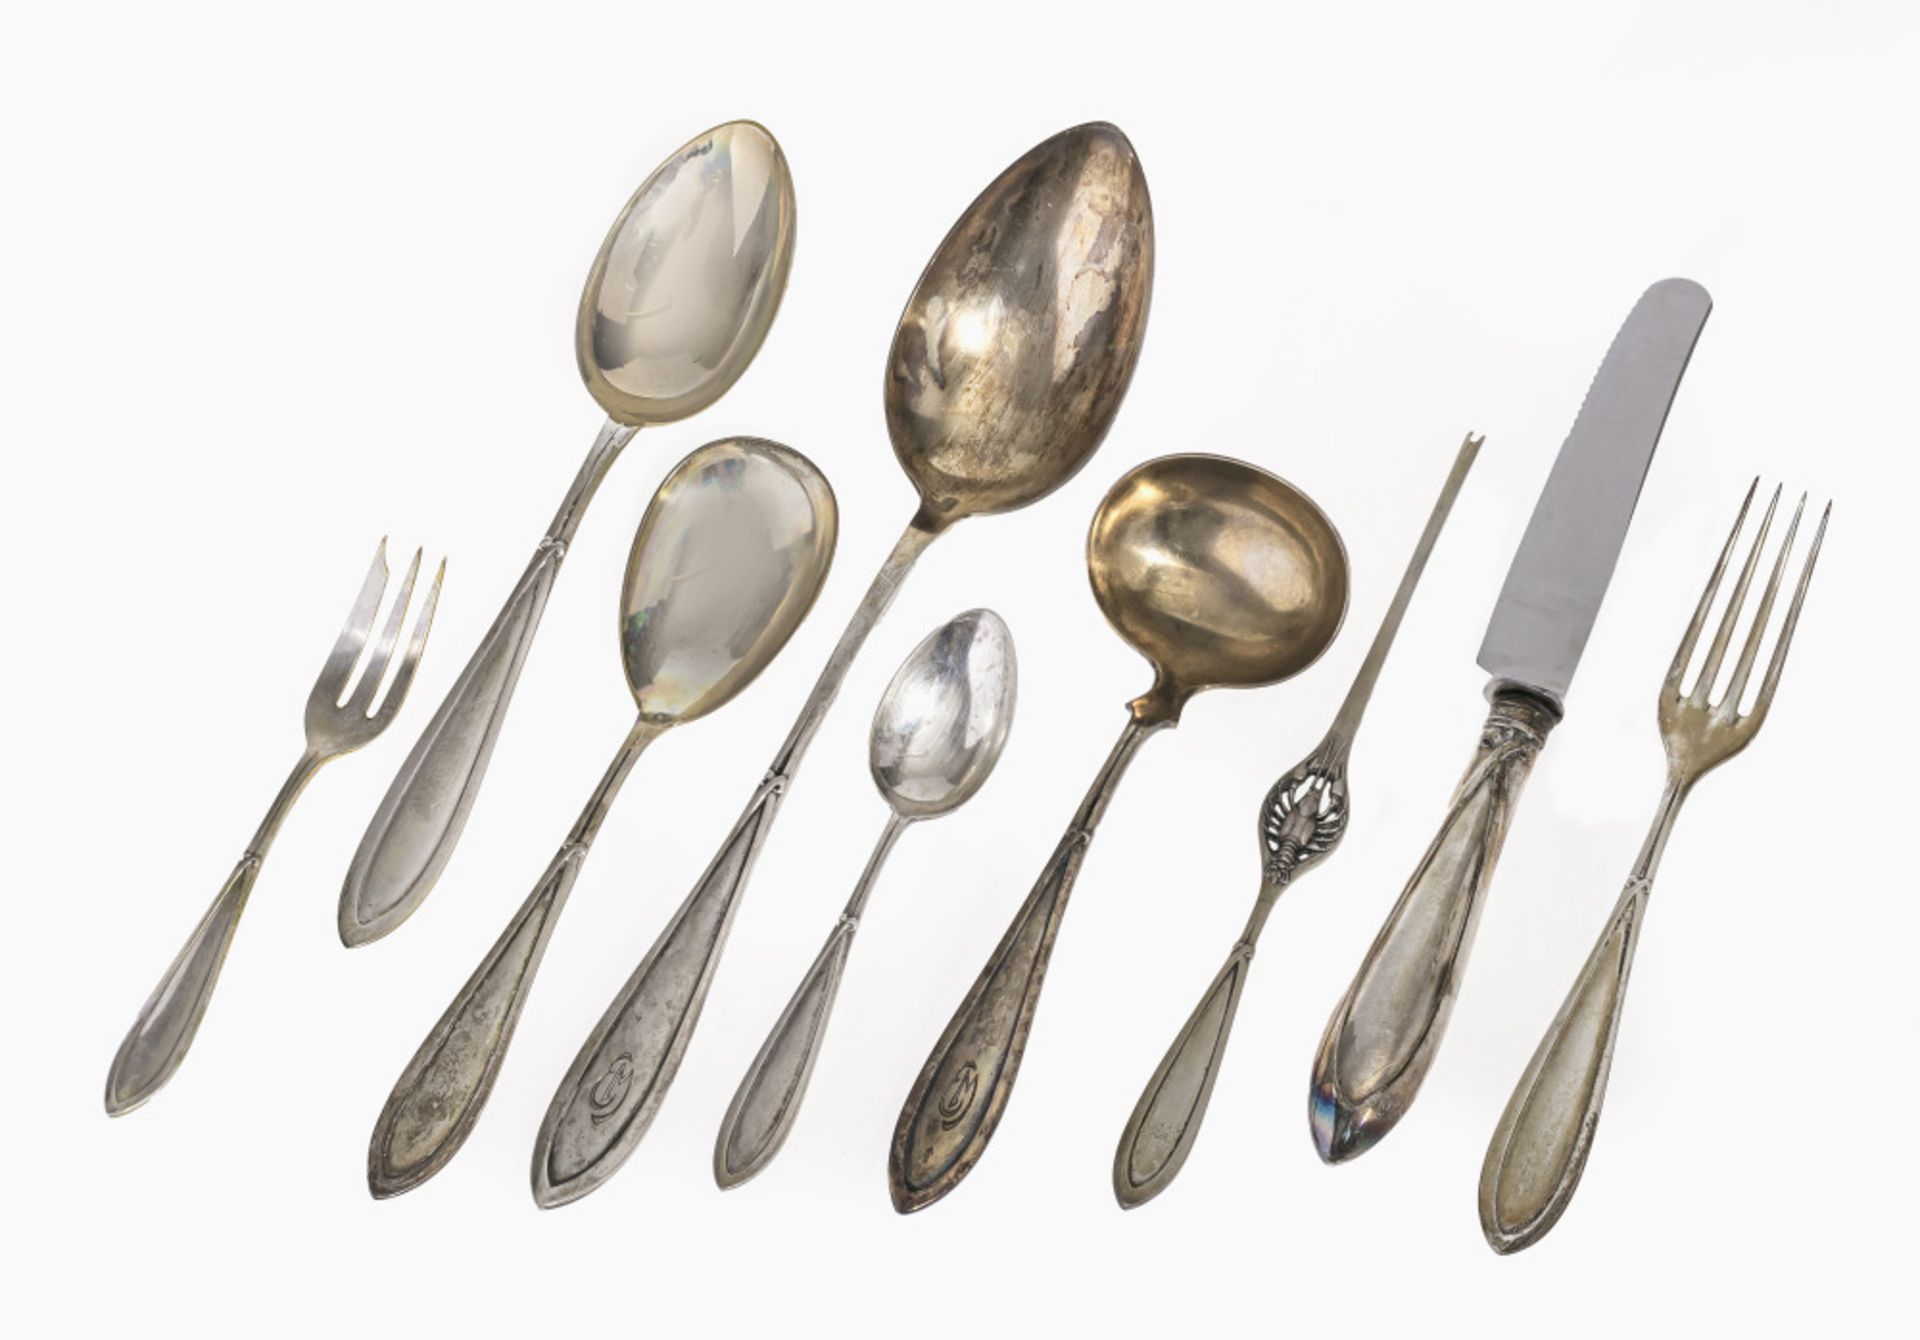 Cutlery, 64 pieces - Design by Peter Behrens, manufactured by Franz Bahner, Dusseldorf, 1904